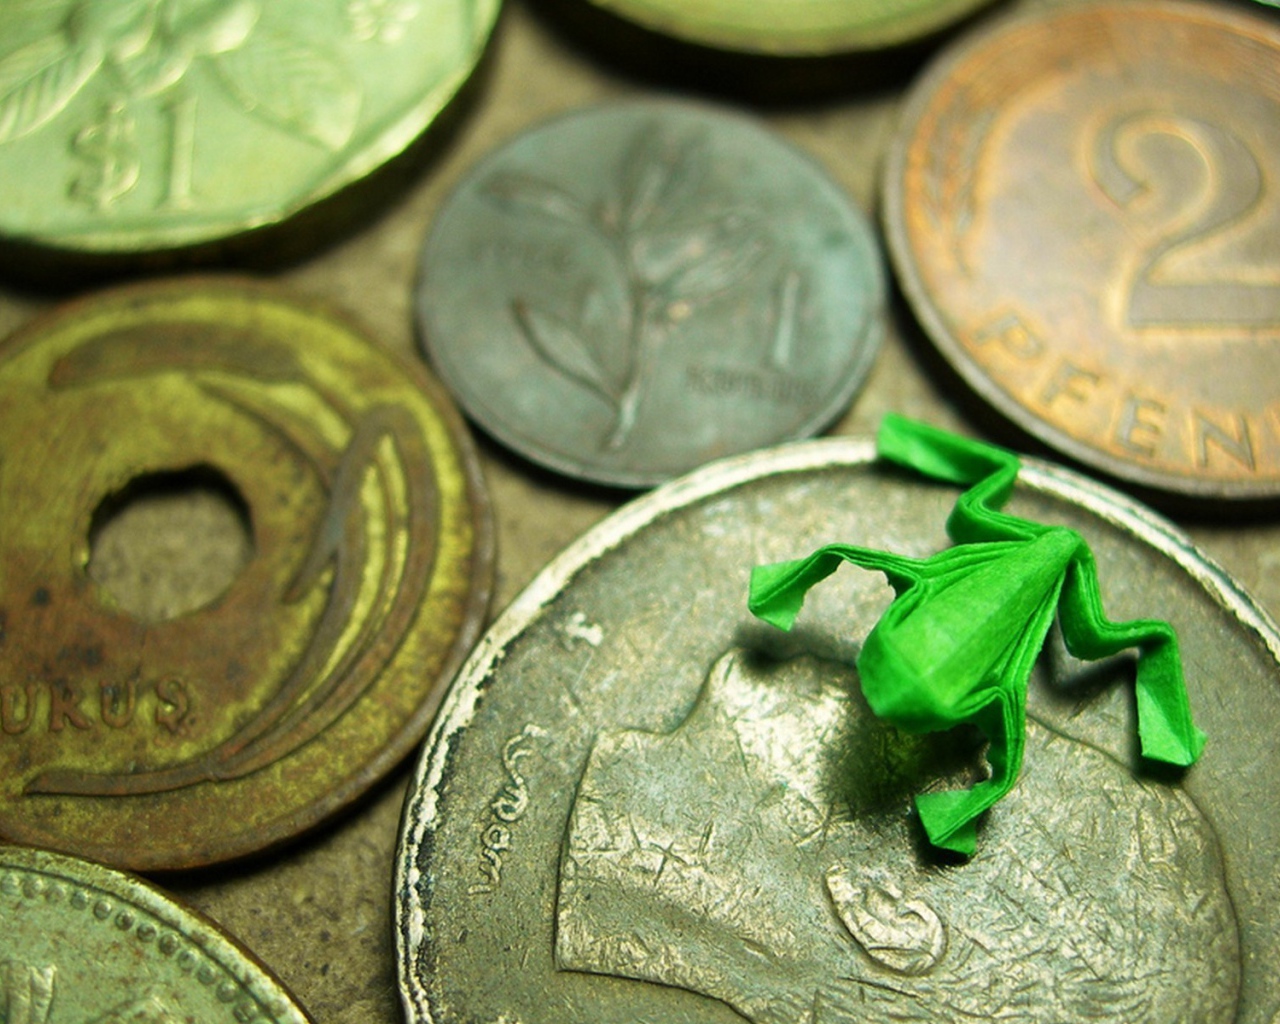 Фигурка лягушки на монетах